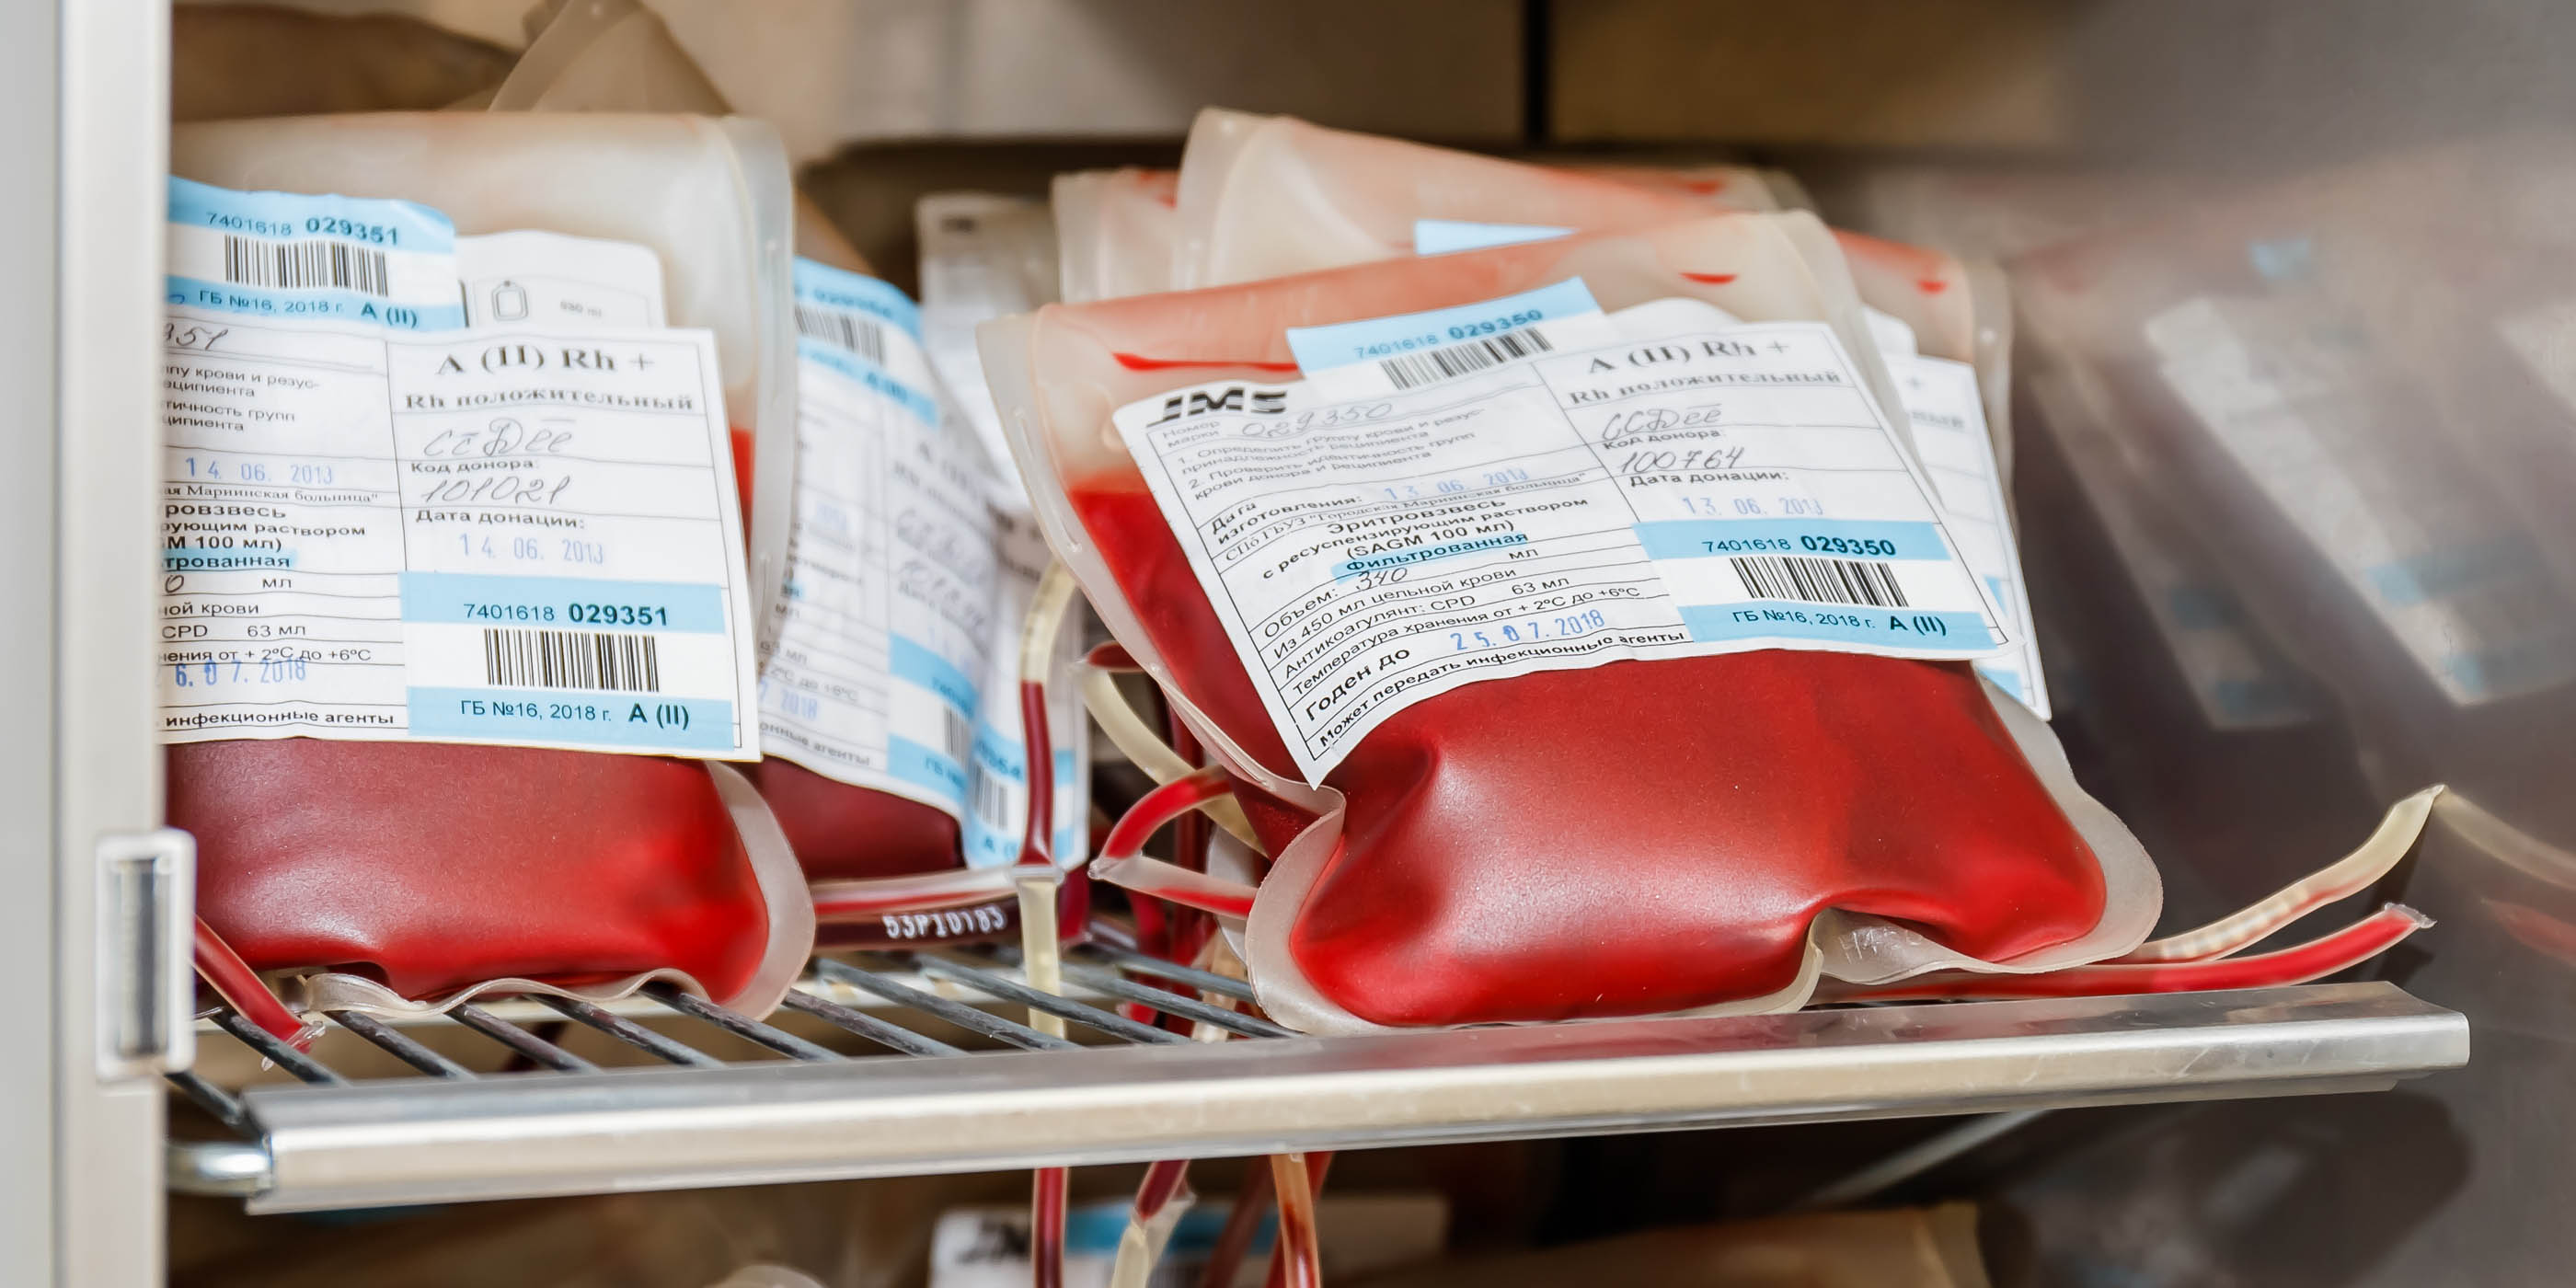 Работающая в чебоксарской больнице медсестра 37 лет регулярно сдает донорскую кровь